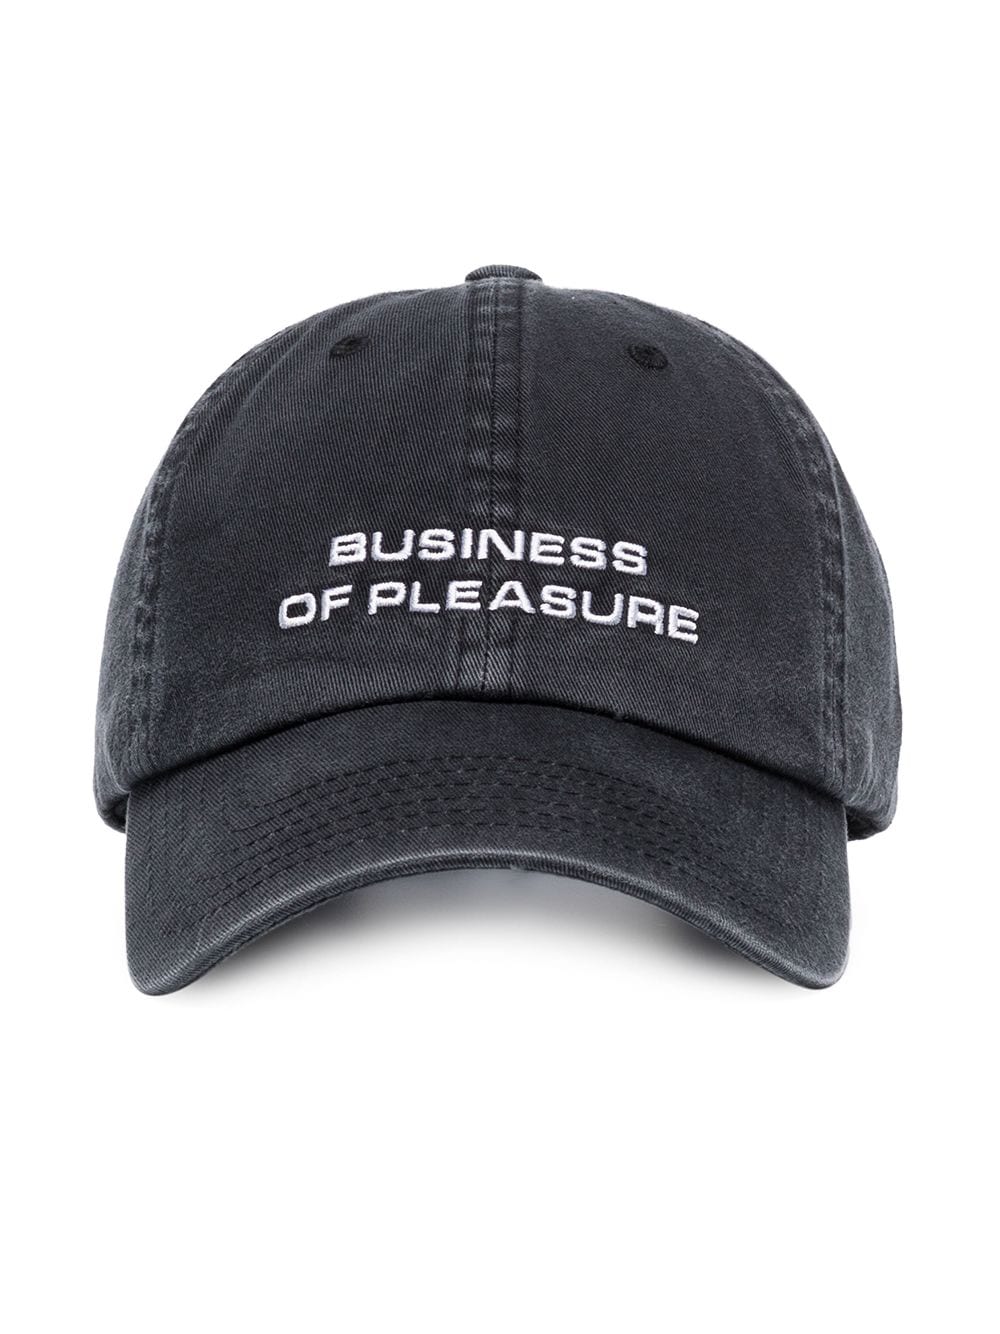 cap business